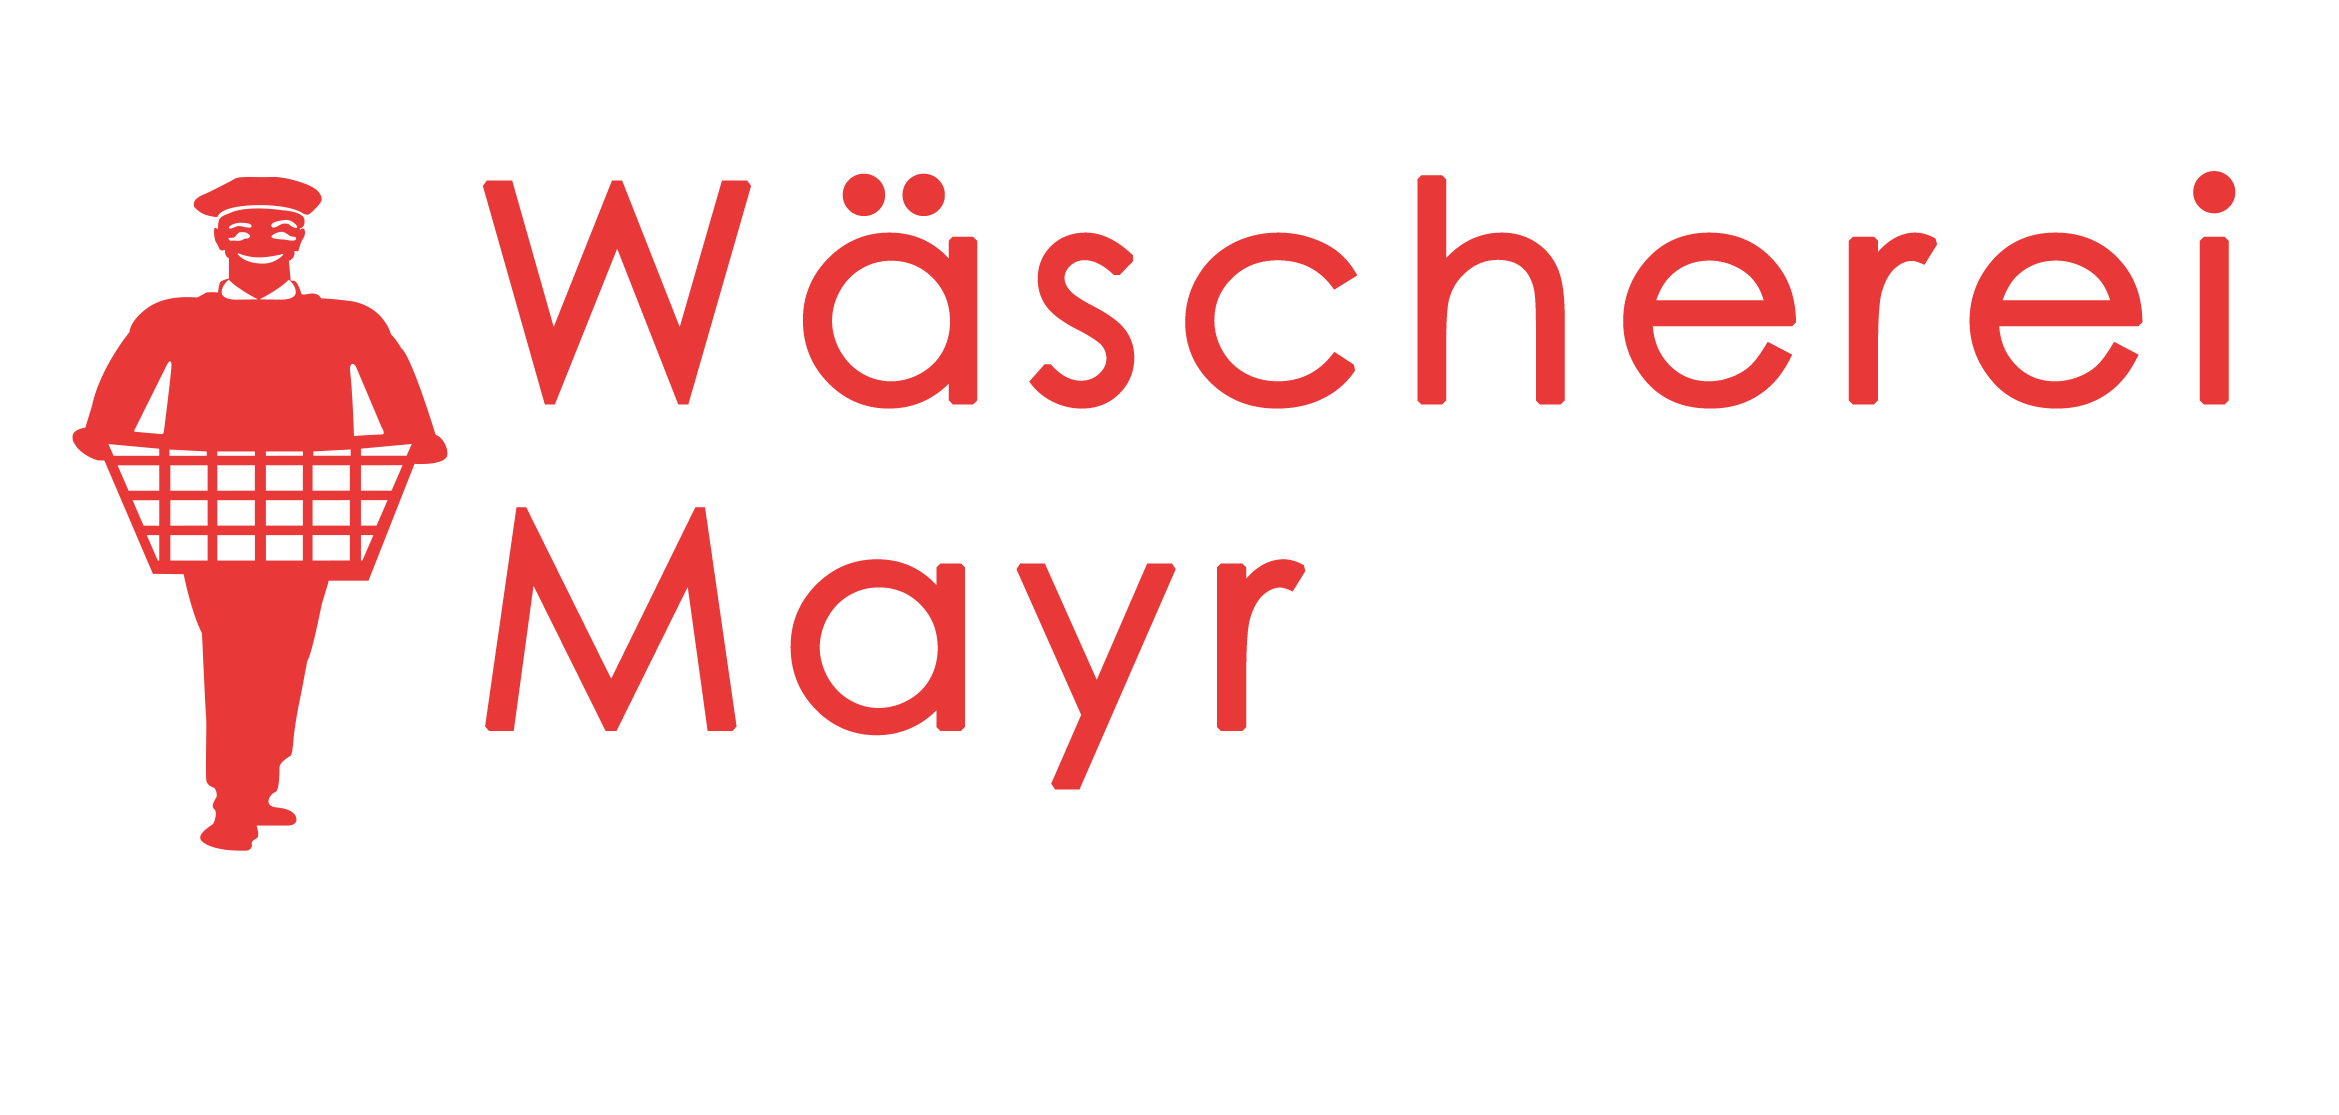 Waescherei Mayr